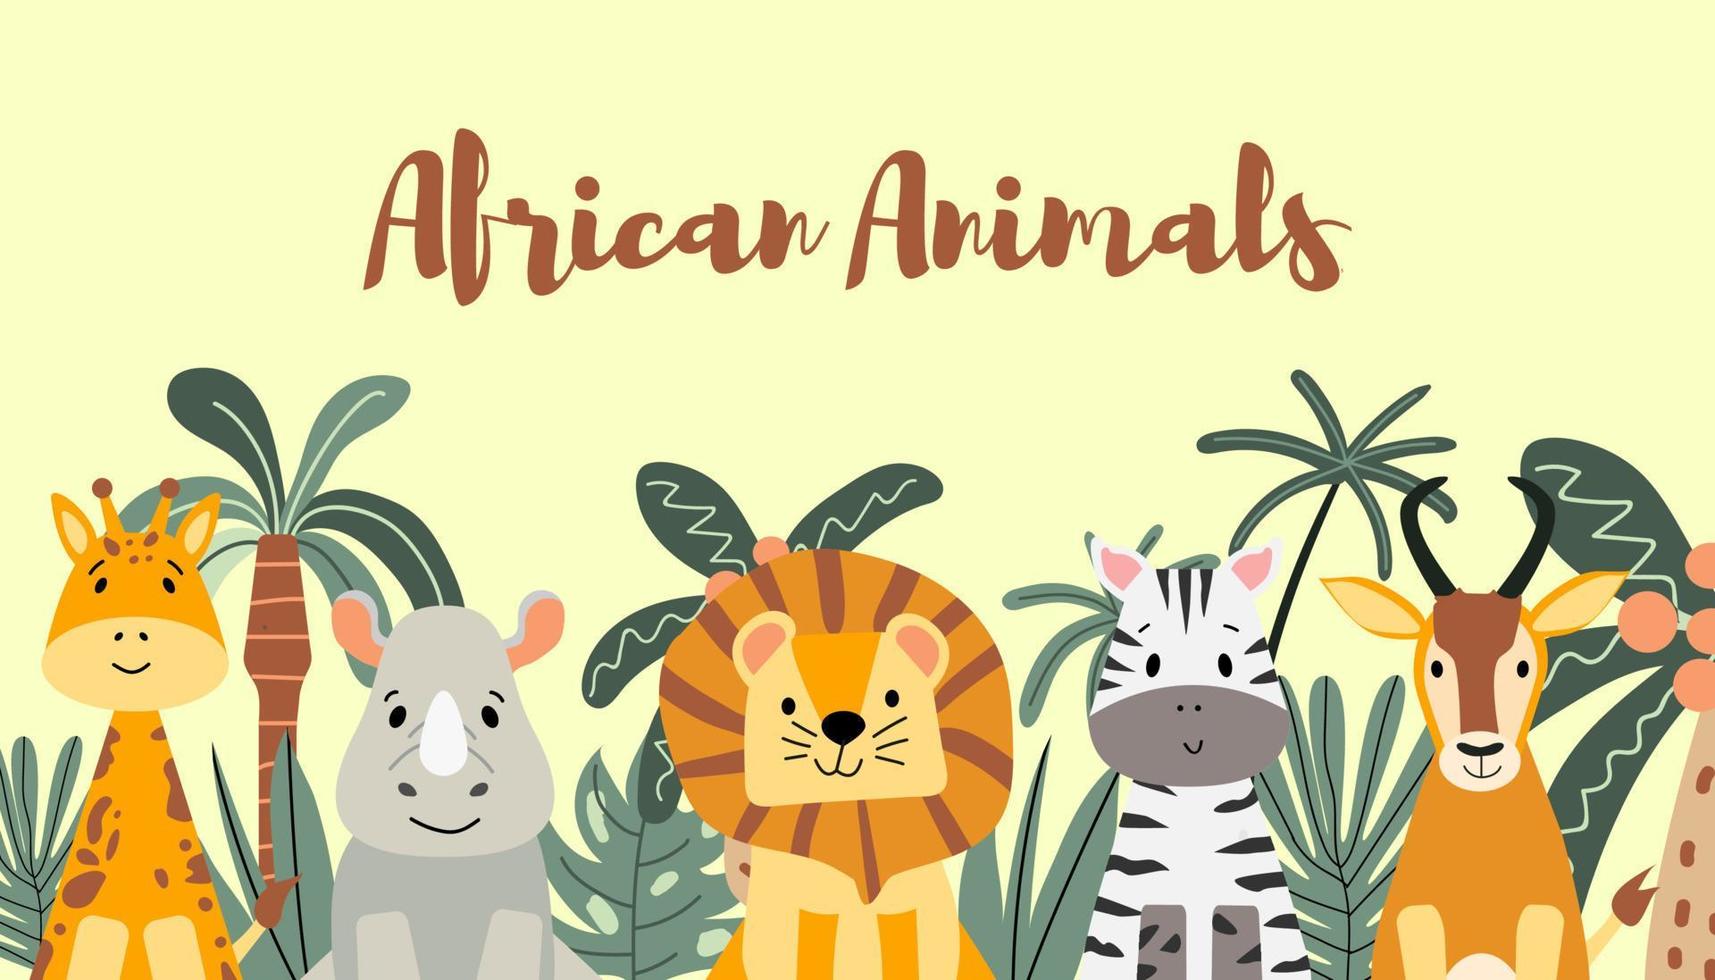 vektor horisontell baner med söt afrikansk djur. vild djur bland tropisk växter. zebra, lejon, giraff, antilop och noshörning i platt tecknad serie stil. djungel.